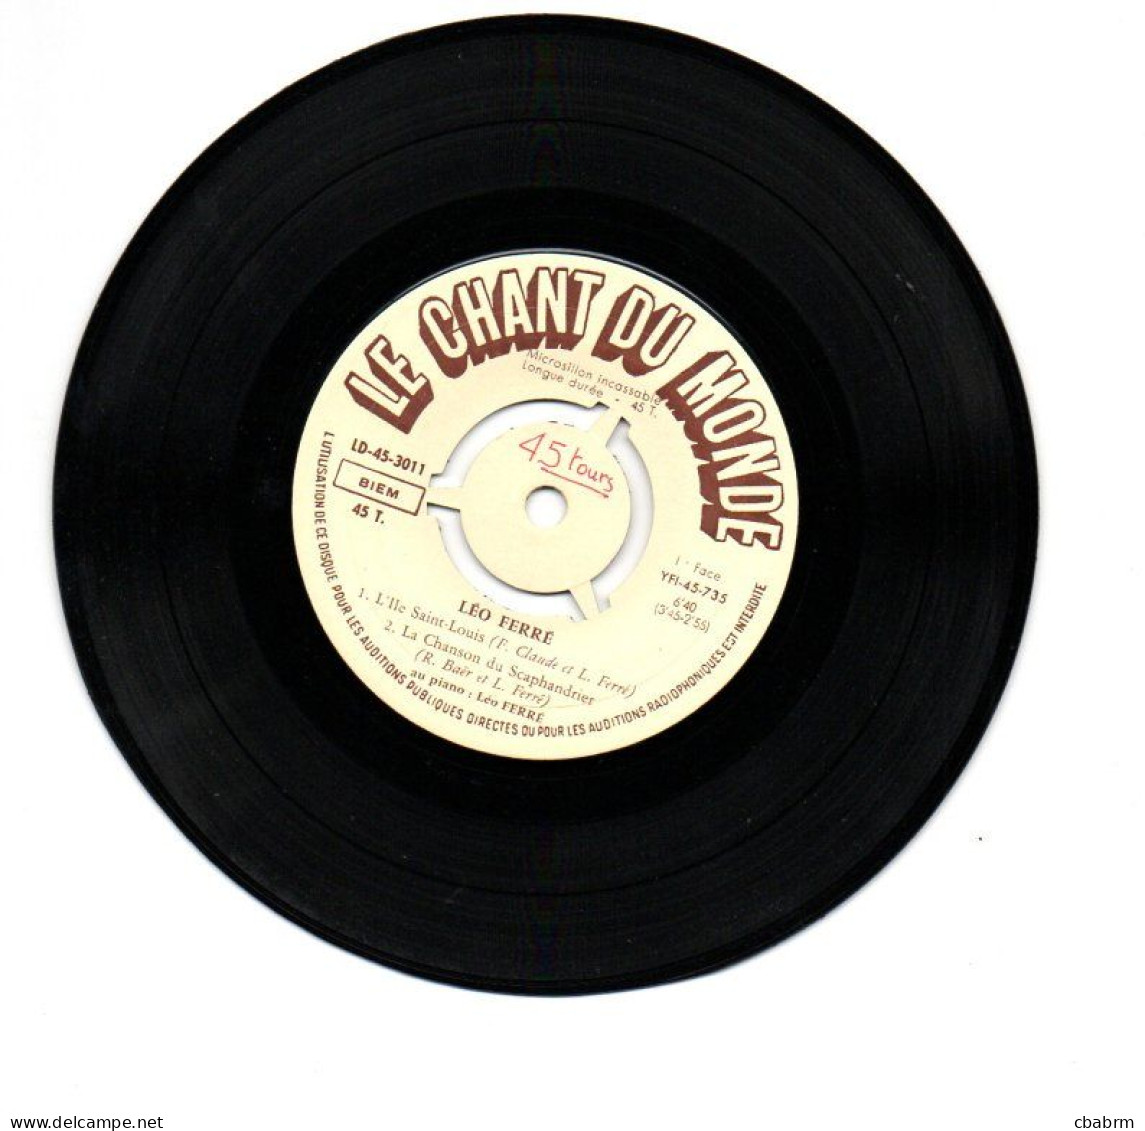 EP 45 TOURS LEO FERRE L'ILE SAINT LOUIS 1956 FRANCE Le Chant Du Monde ‎ 45 3011 - Autres - Musique Française